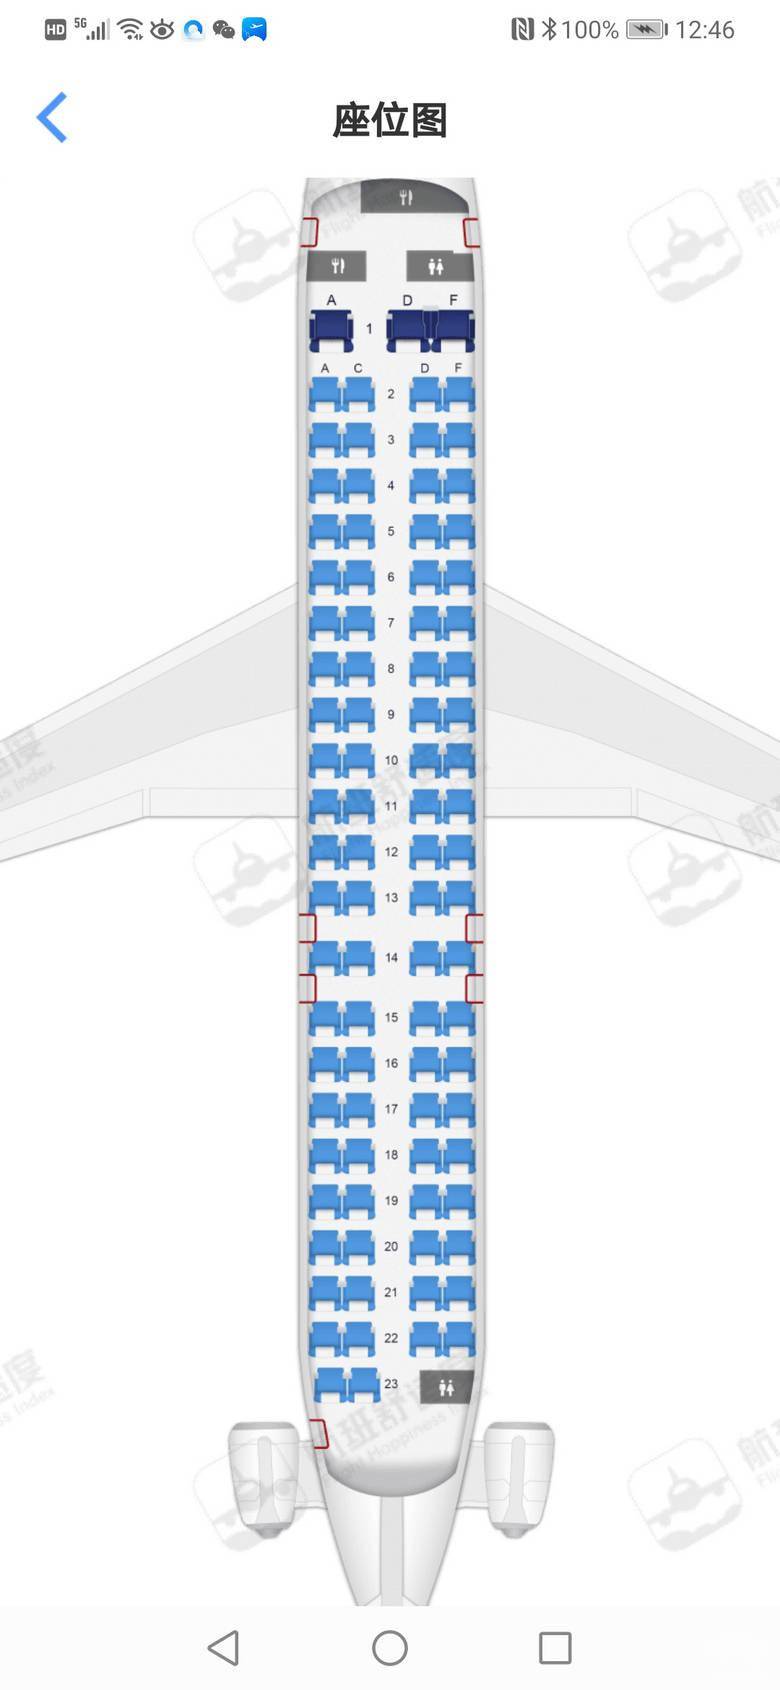 国内越来越少见打卡华夏航空庞巴迪crj900隔音处理很赞